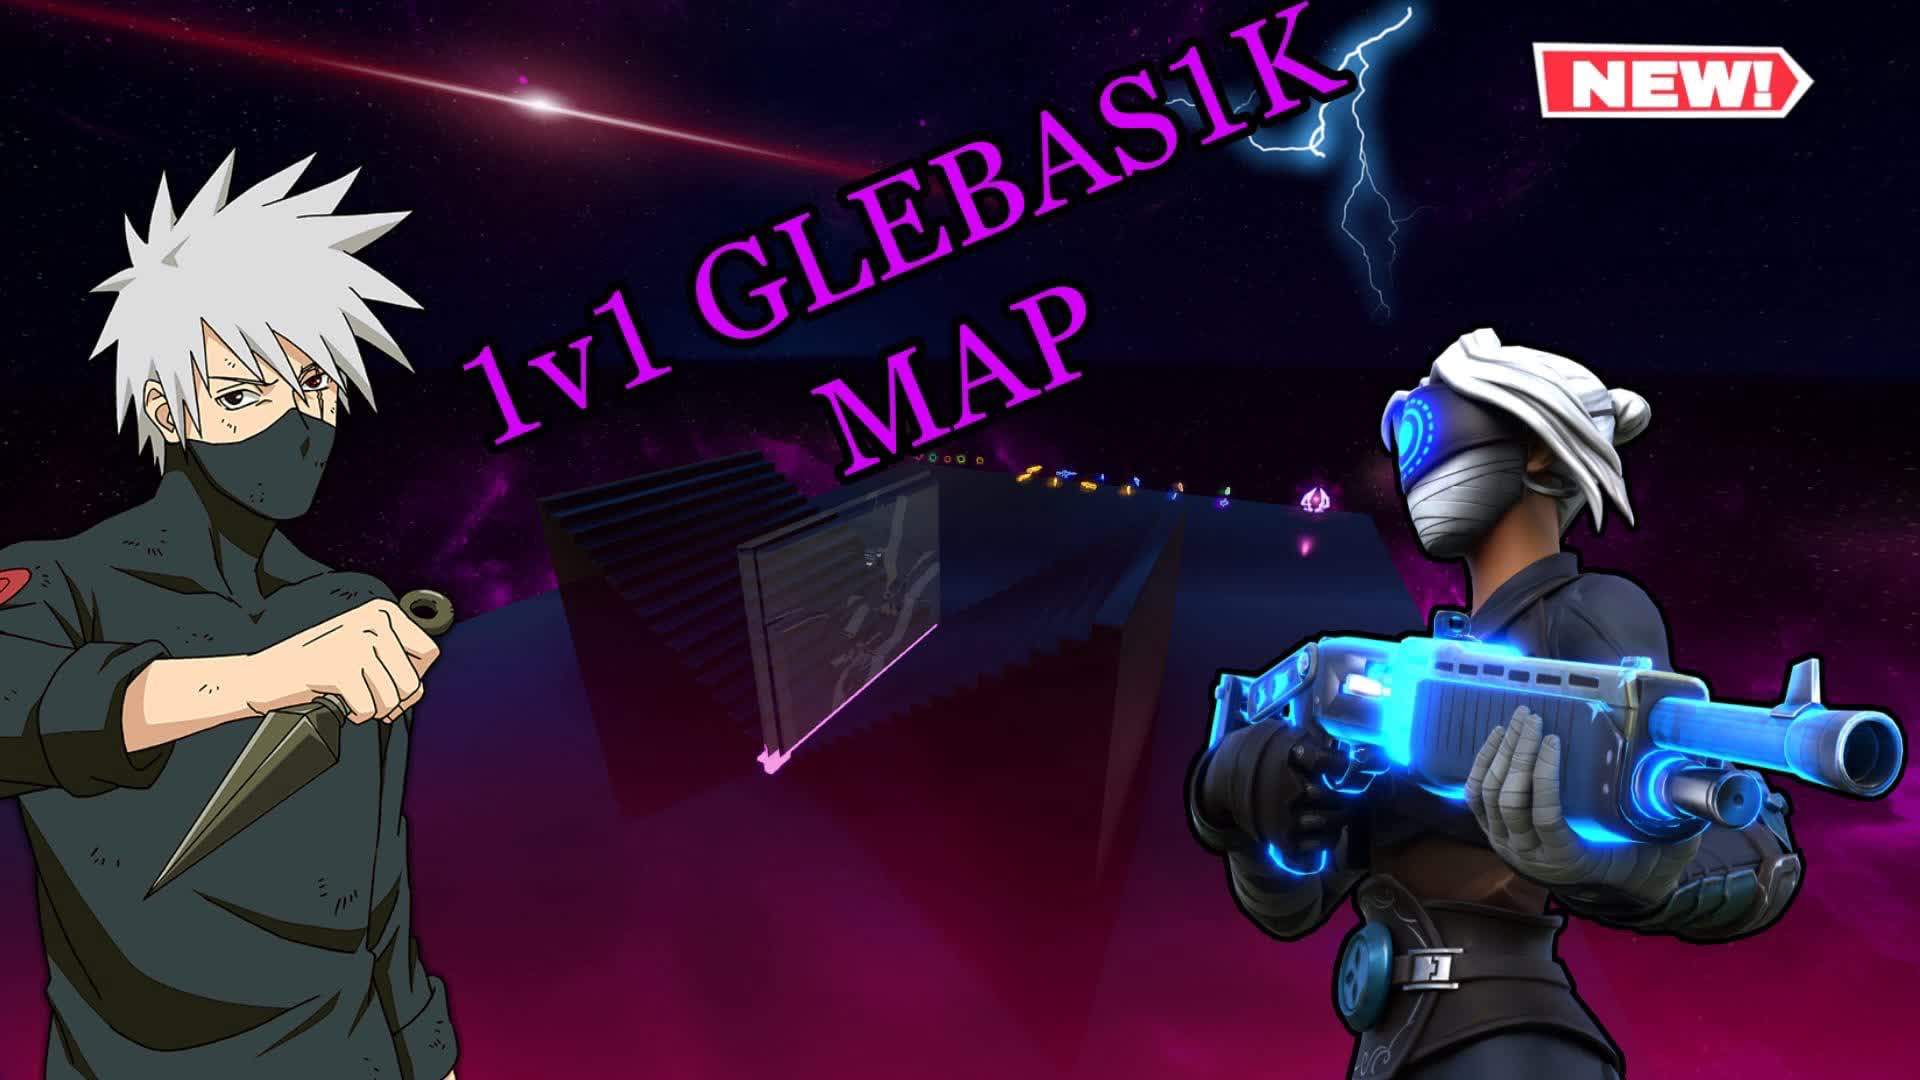 1V1 GLEBAS1K MAP / 0 DELAY